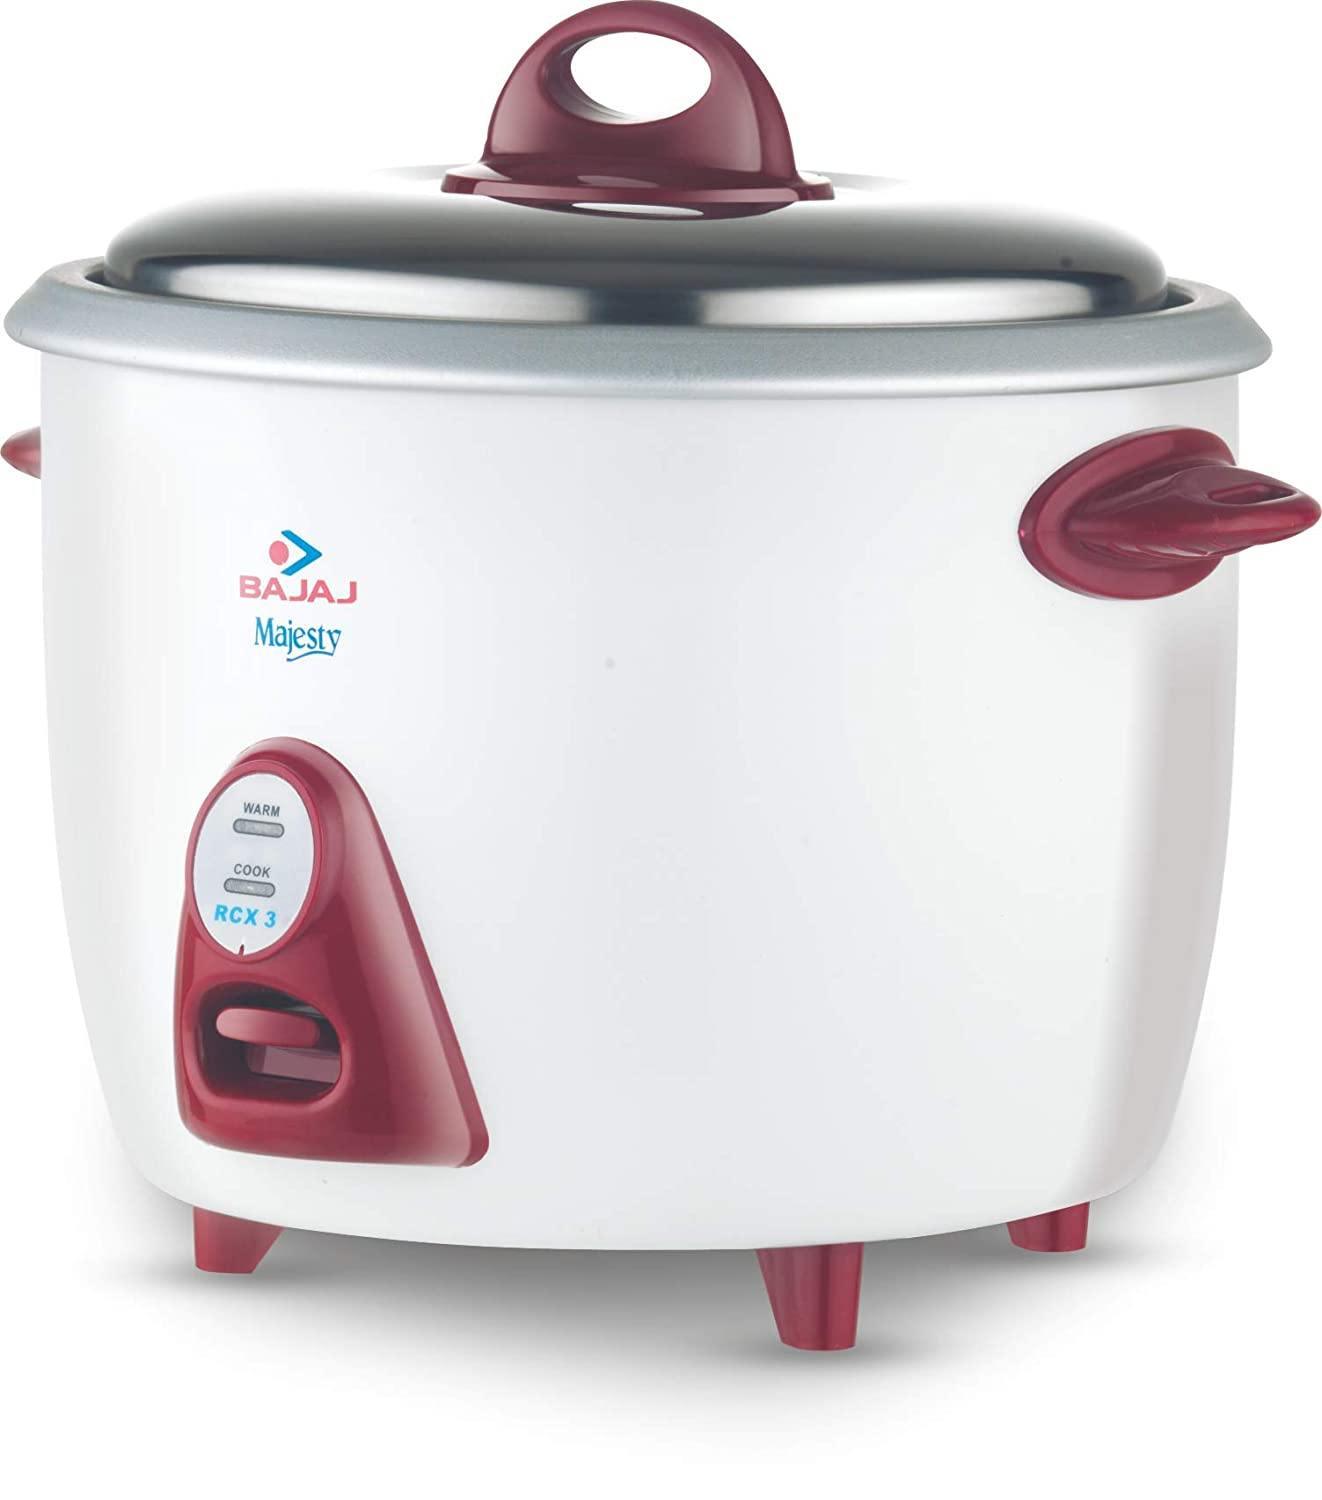 Bajaj Majesty New RCX-3,1500 ML 350-Watt Multi function Rice Cooker-Home & Kitchen Appliances-dealsplant